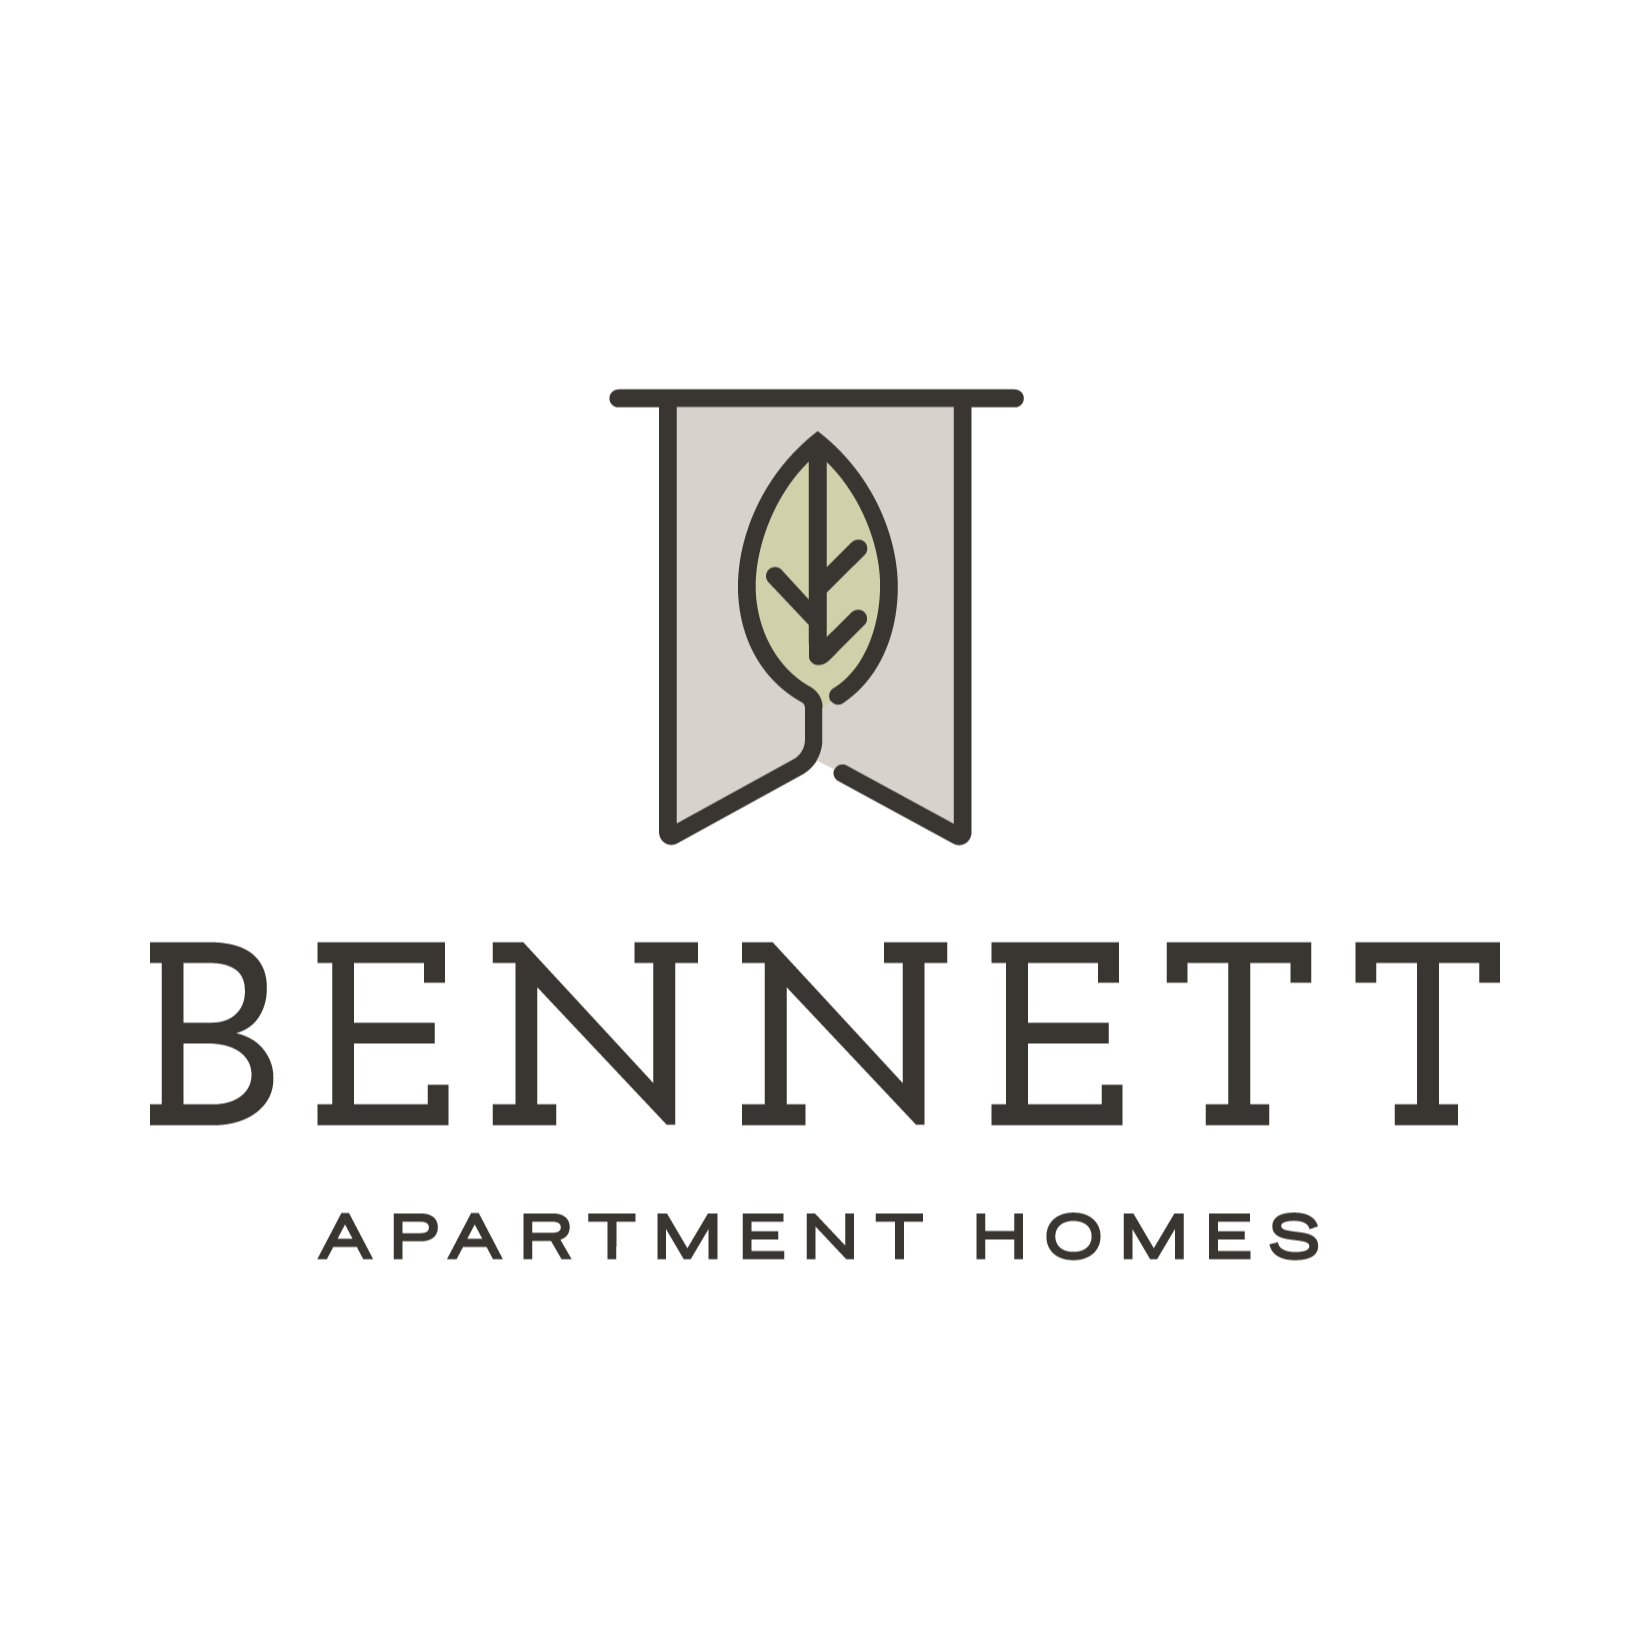 Bennett Apartment Homes